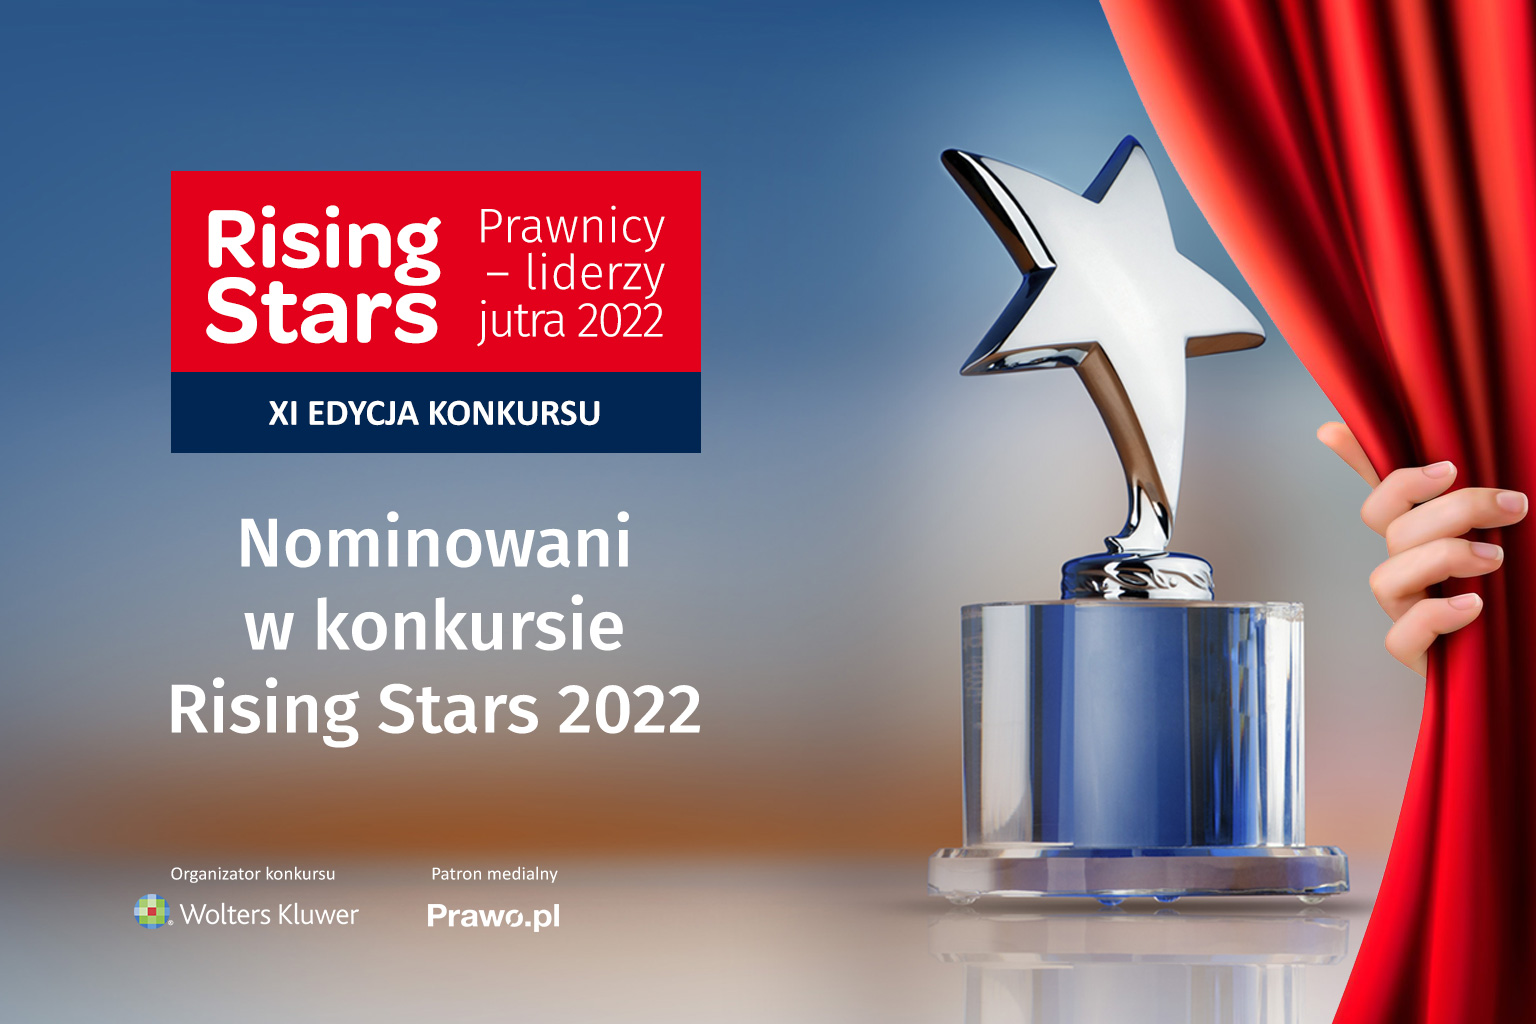 Poznaliśmy 35 nominowanych do tytułu Rising Star Prawnik – Lider jutra 2022